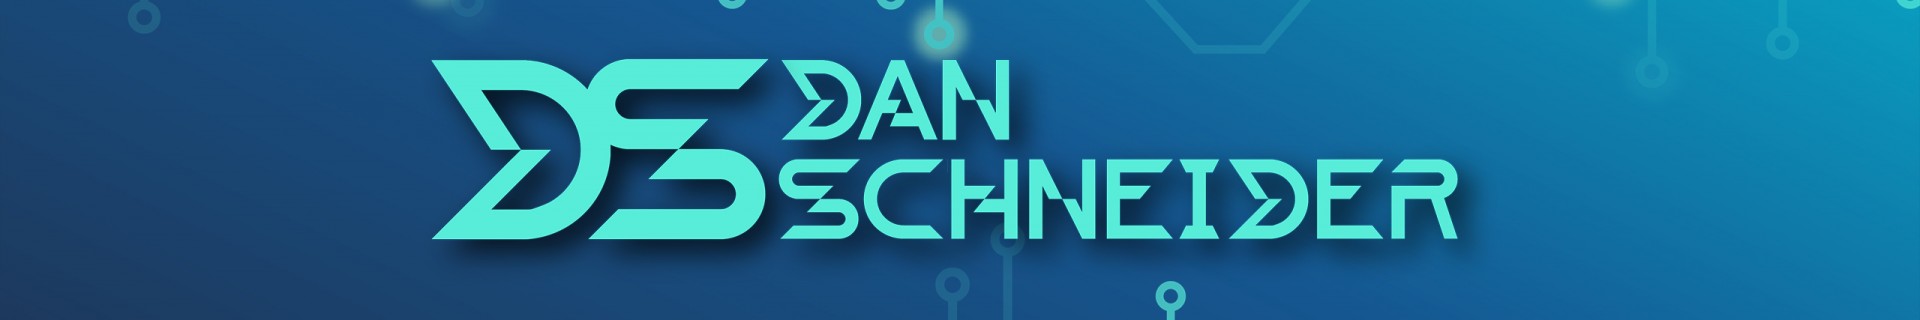 DanSchneider profile cover